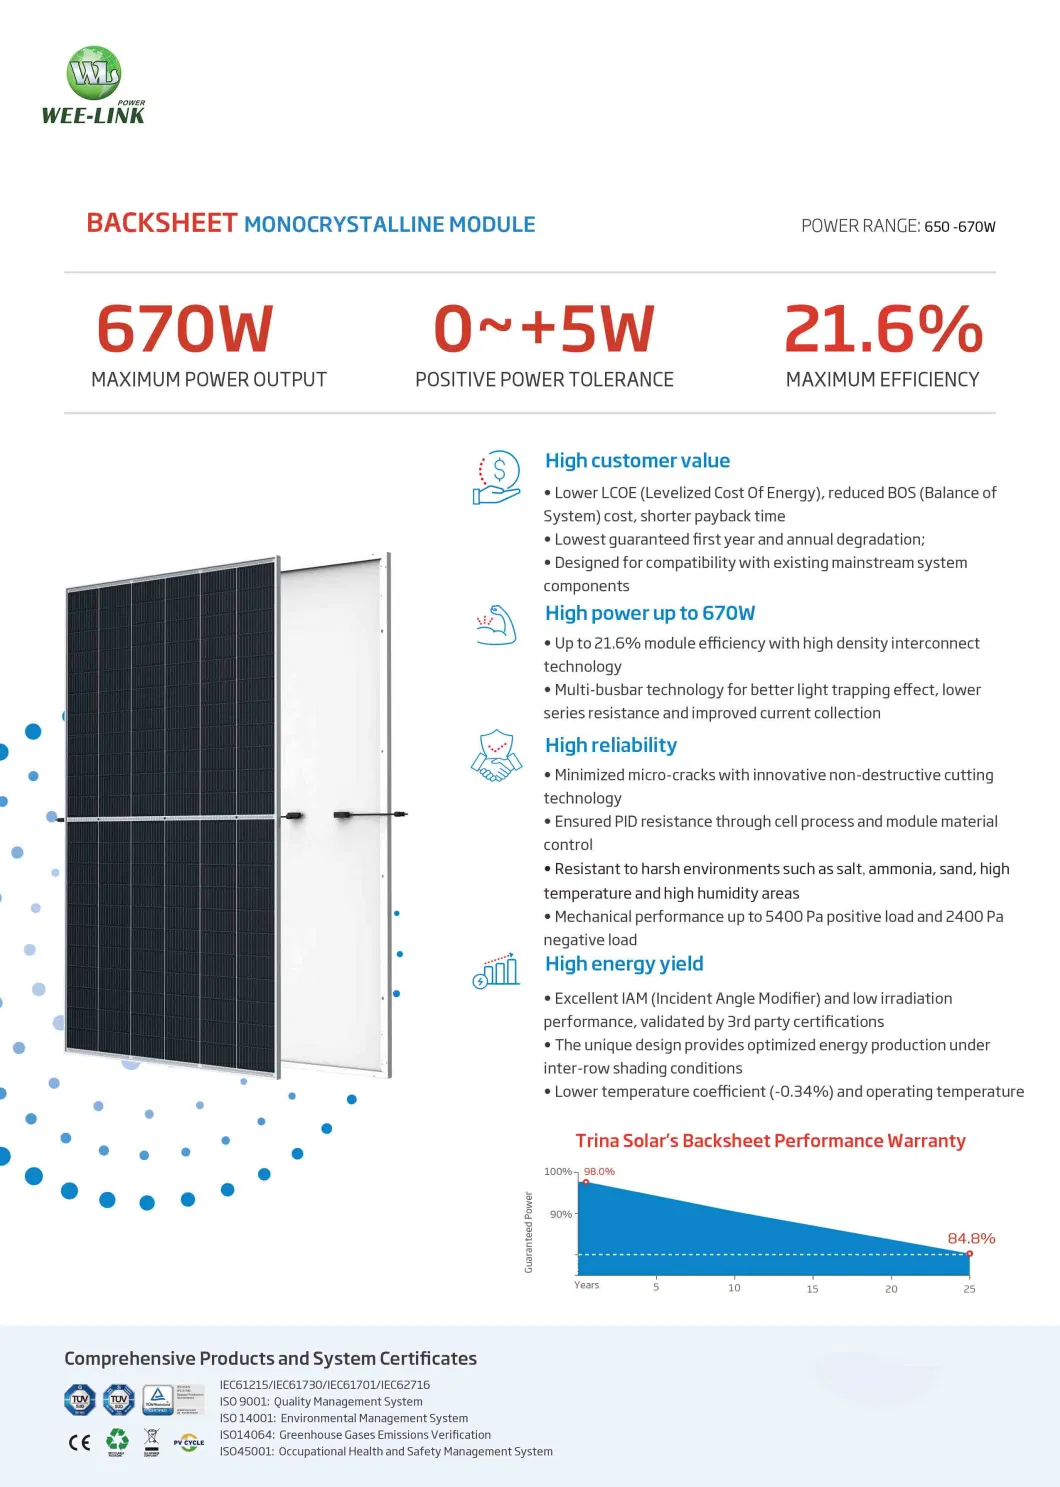 670W Mono Solar Panel Alta energía 210 mm Uso del hogar Uso de energía solar Sistema de almacenamiento de energía solar